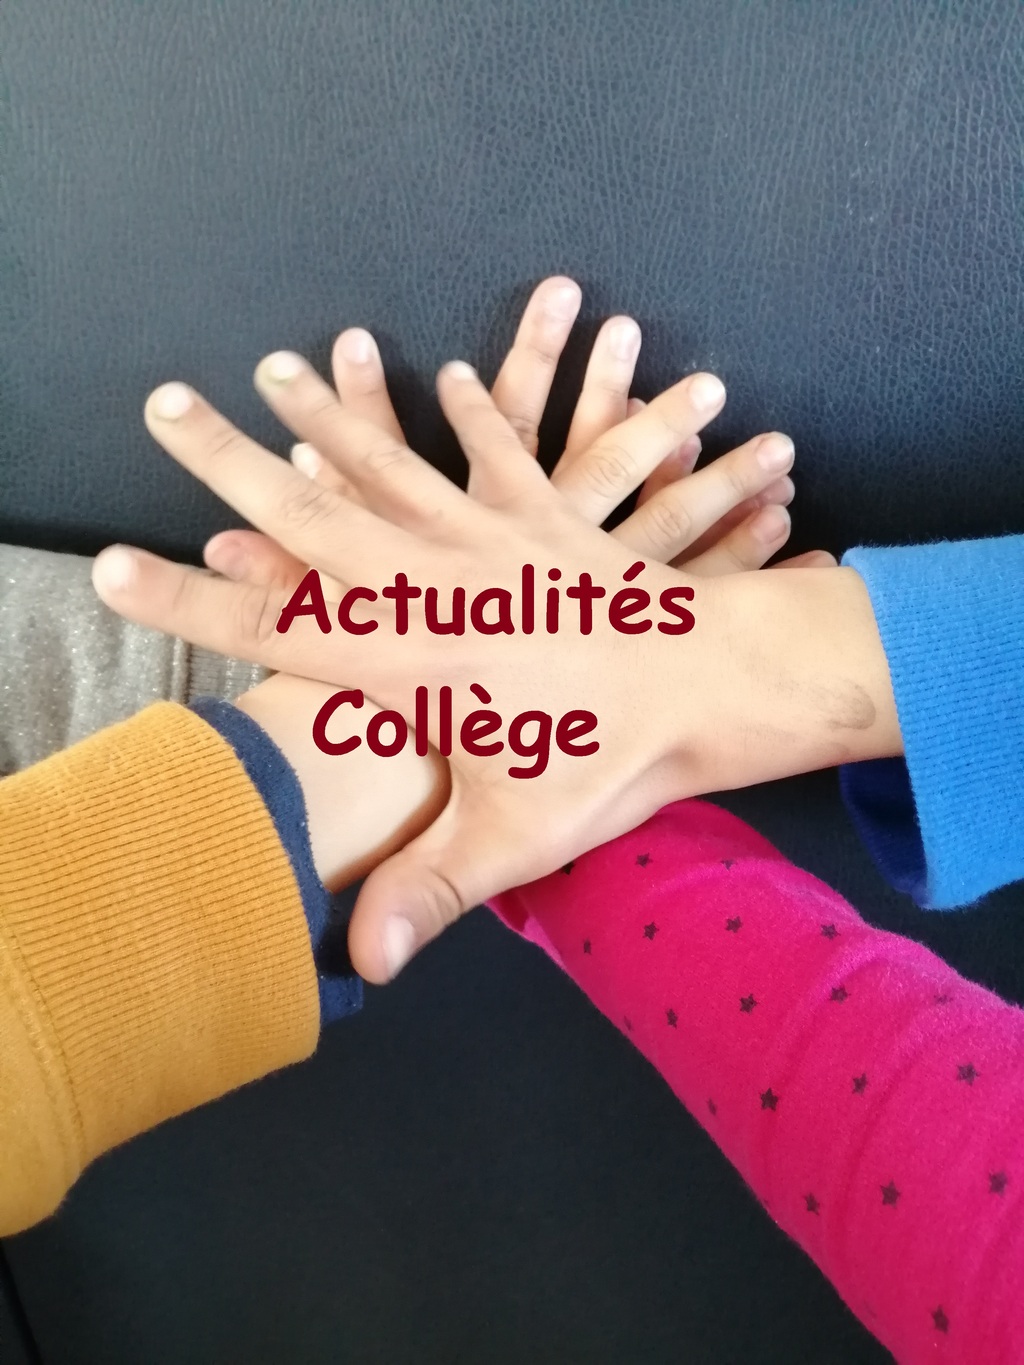 Actualites_College-1